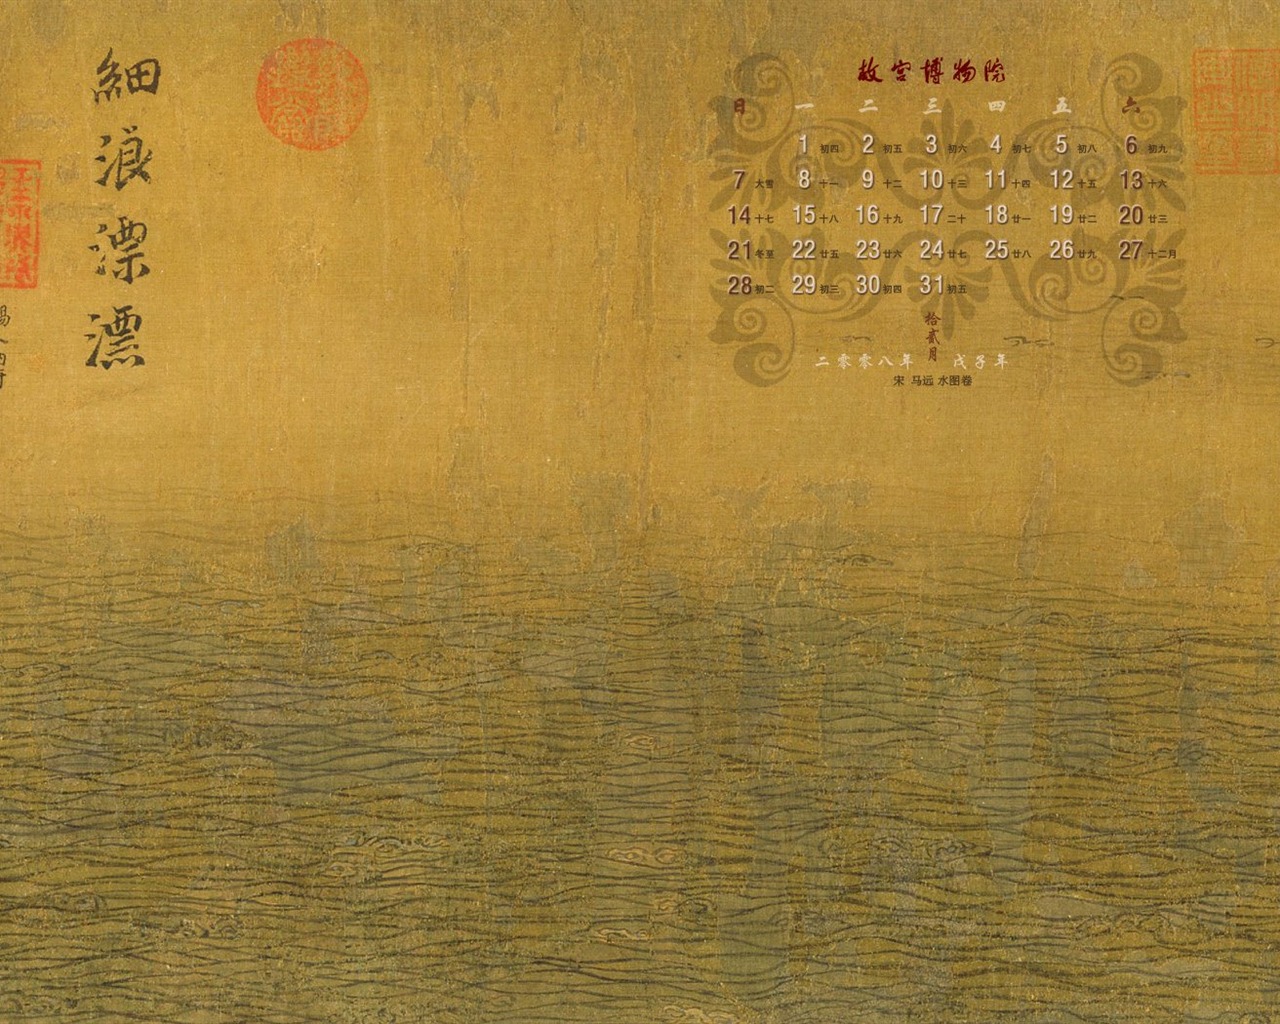 北京故宫博物院 文物展壁纸(二)28 - 1280x1024